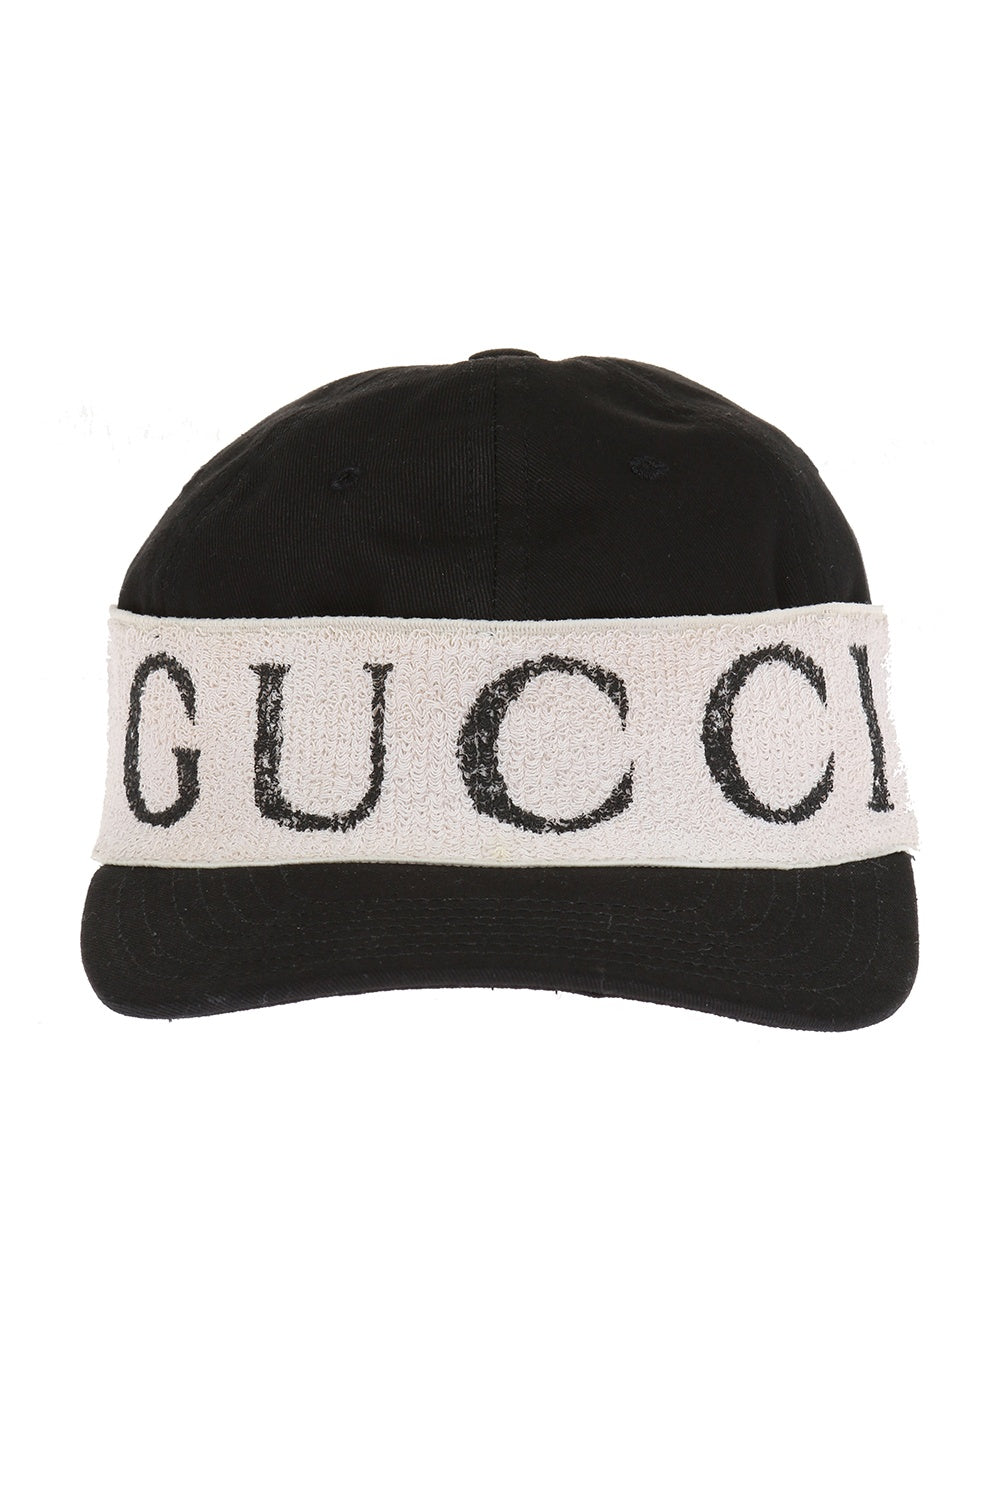 Gucci Baseball Hat Headband in Black Gavriel.us